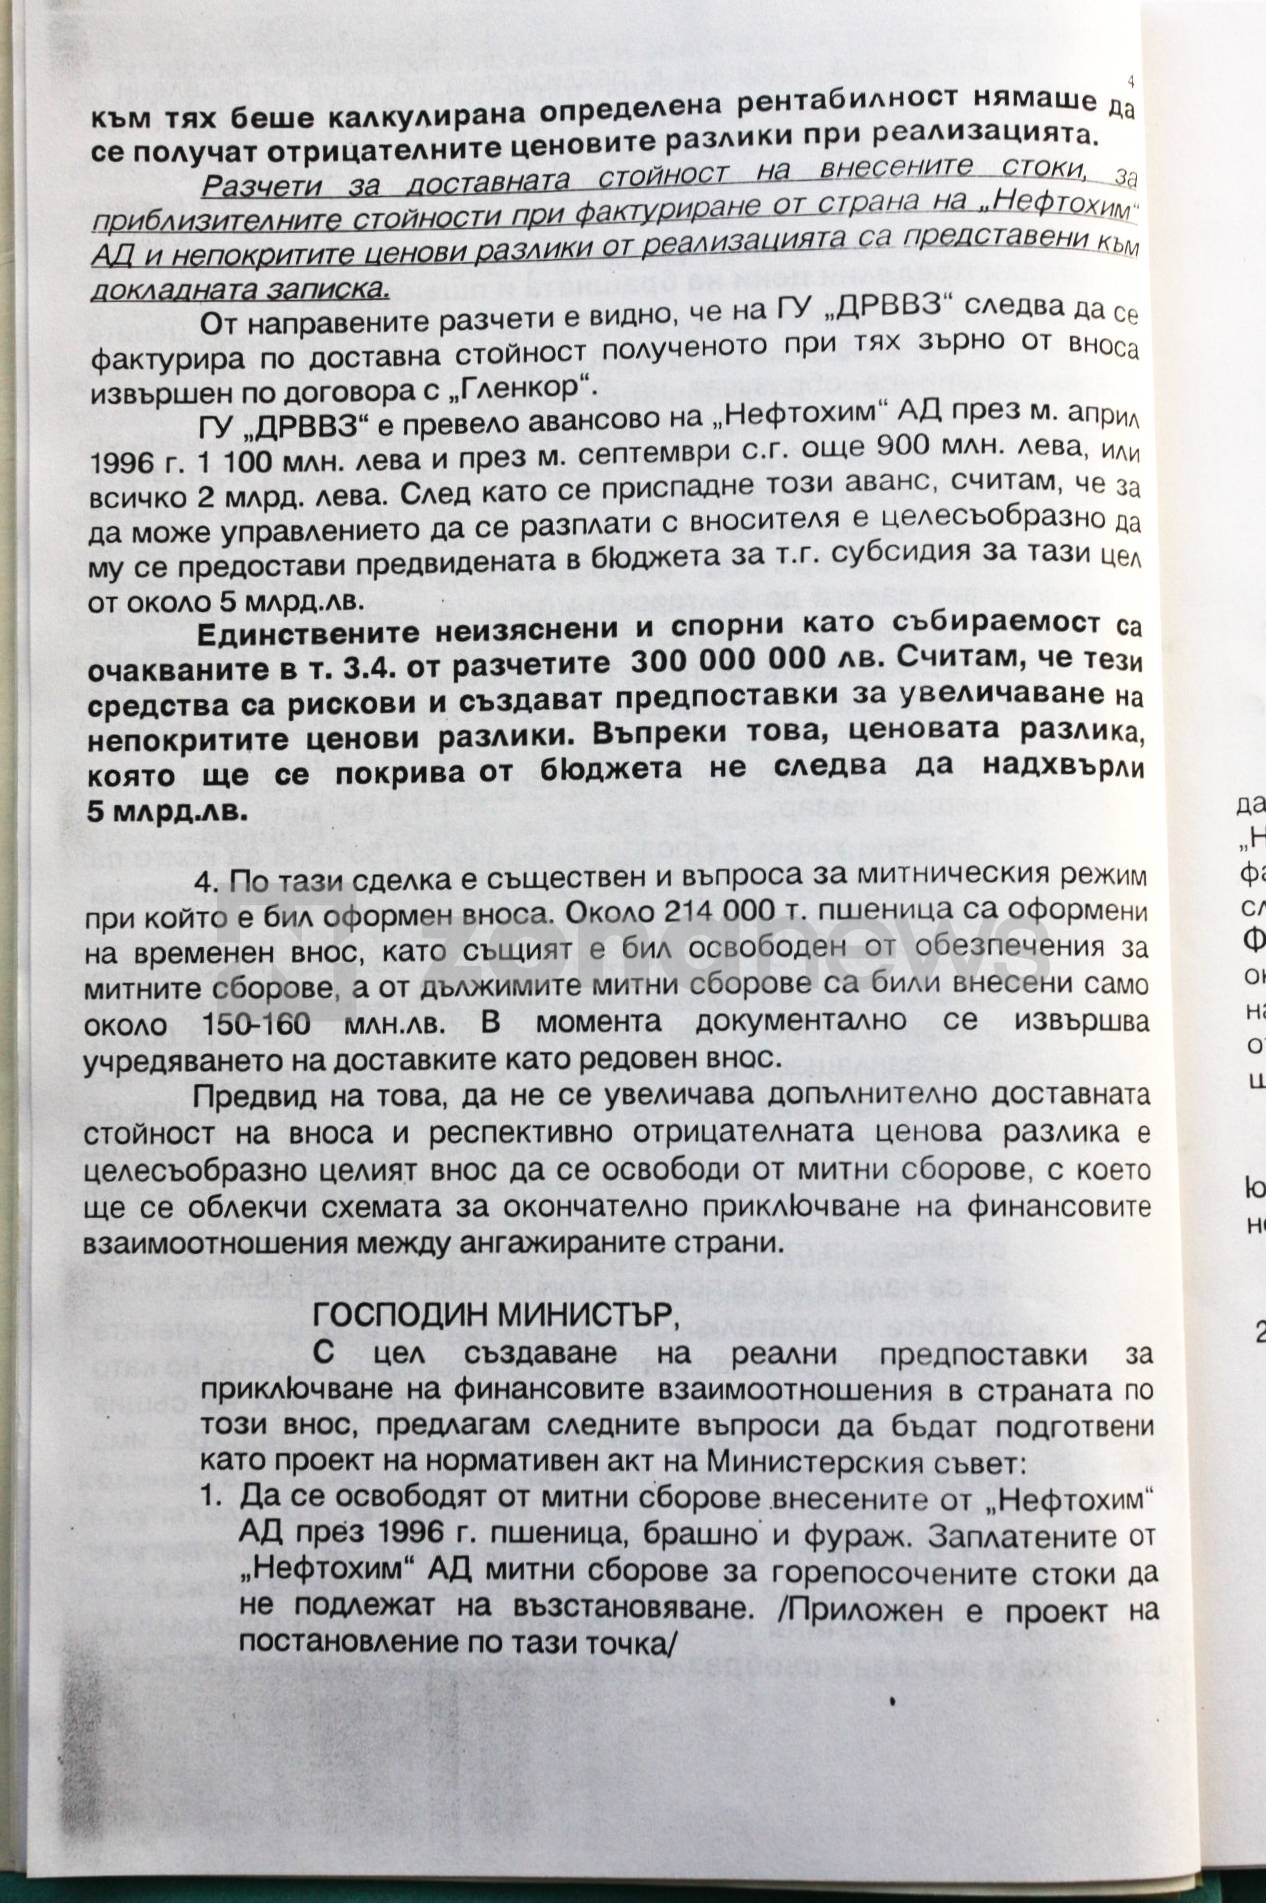 Докладна записка от Румен Порожанов до министъра на финансите Муравей Радев 